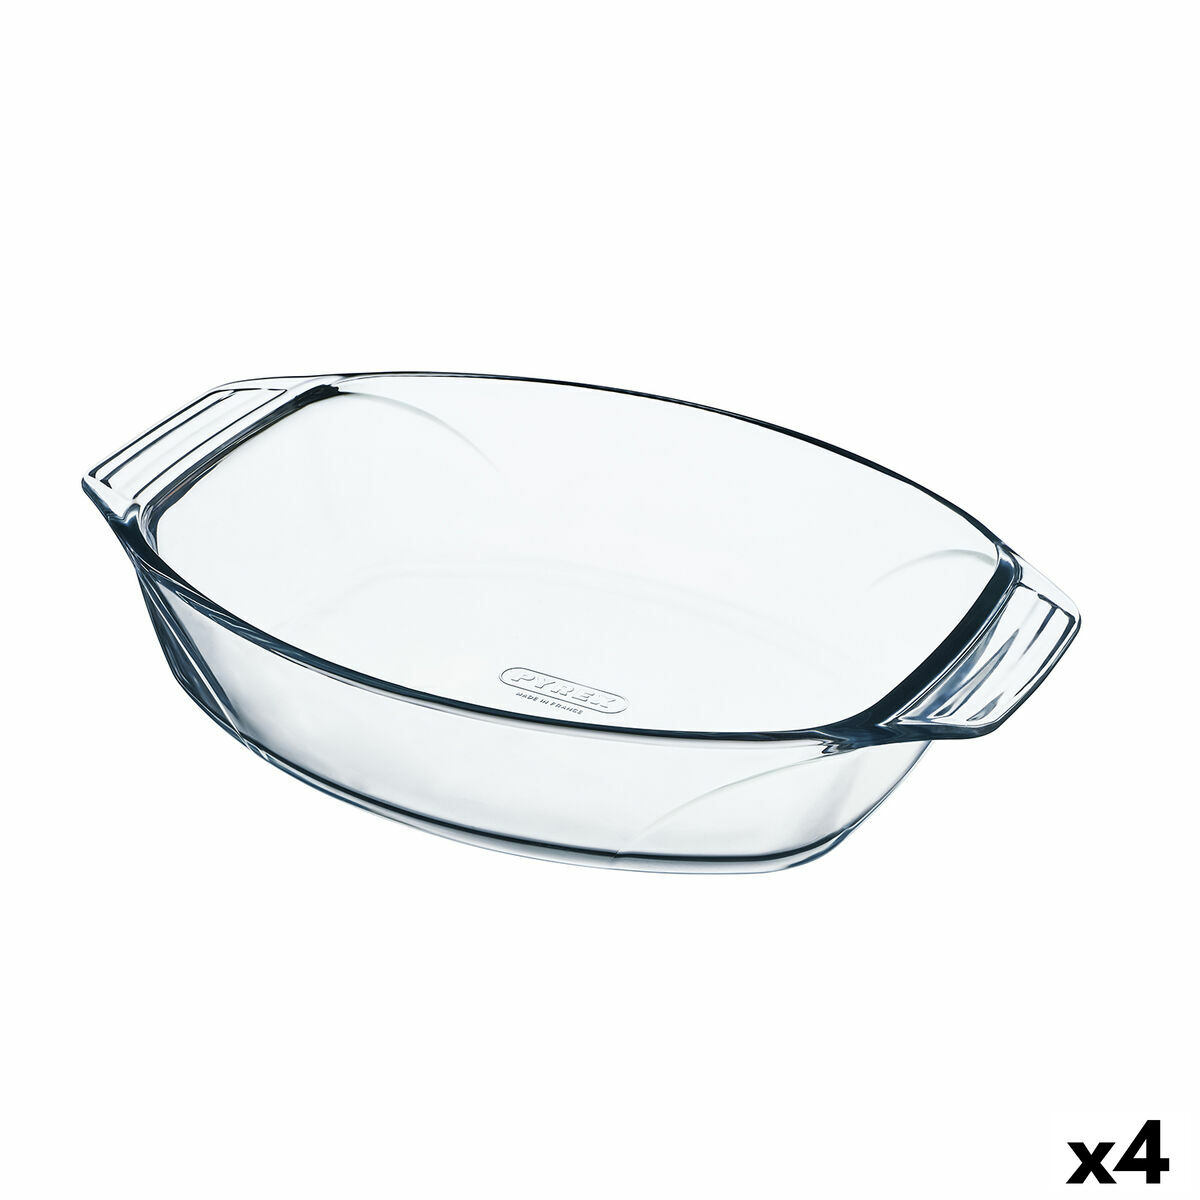 Teglia da Cucina Pyrex Irresistible Ovale 30,3 x 20,8 x 6,8 cm Trasparente Vetro (4 Unità)